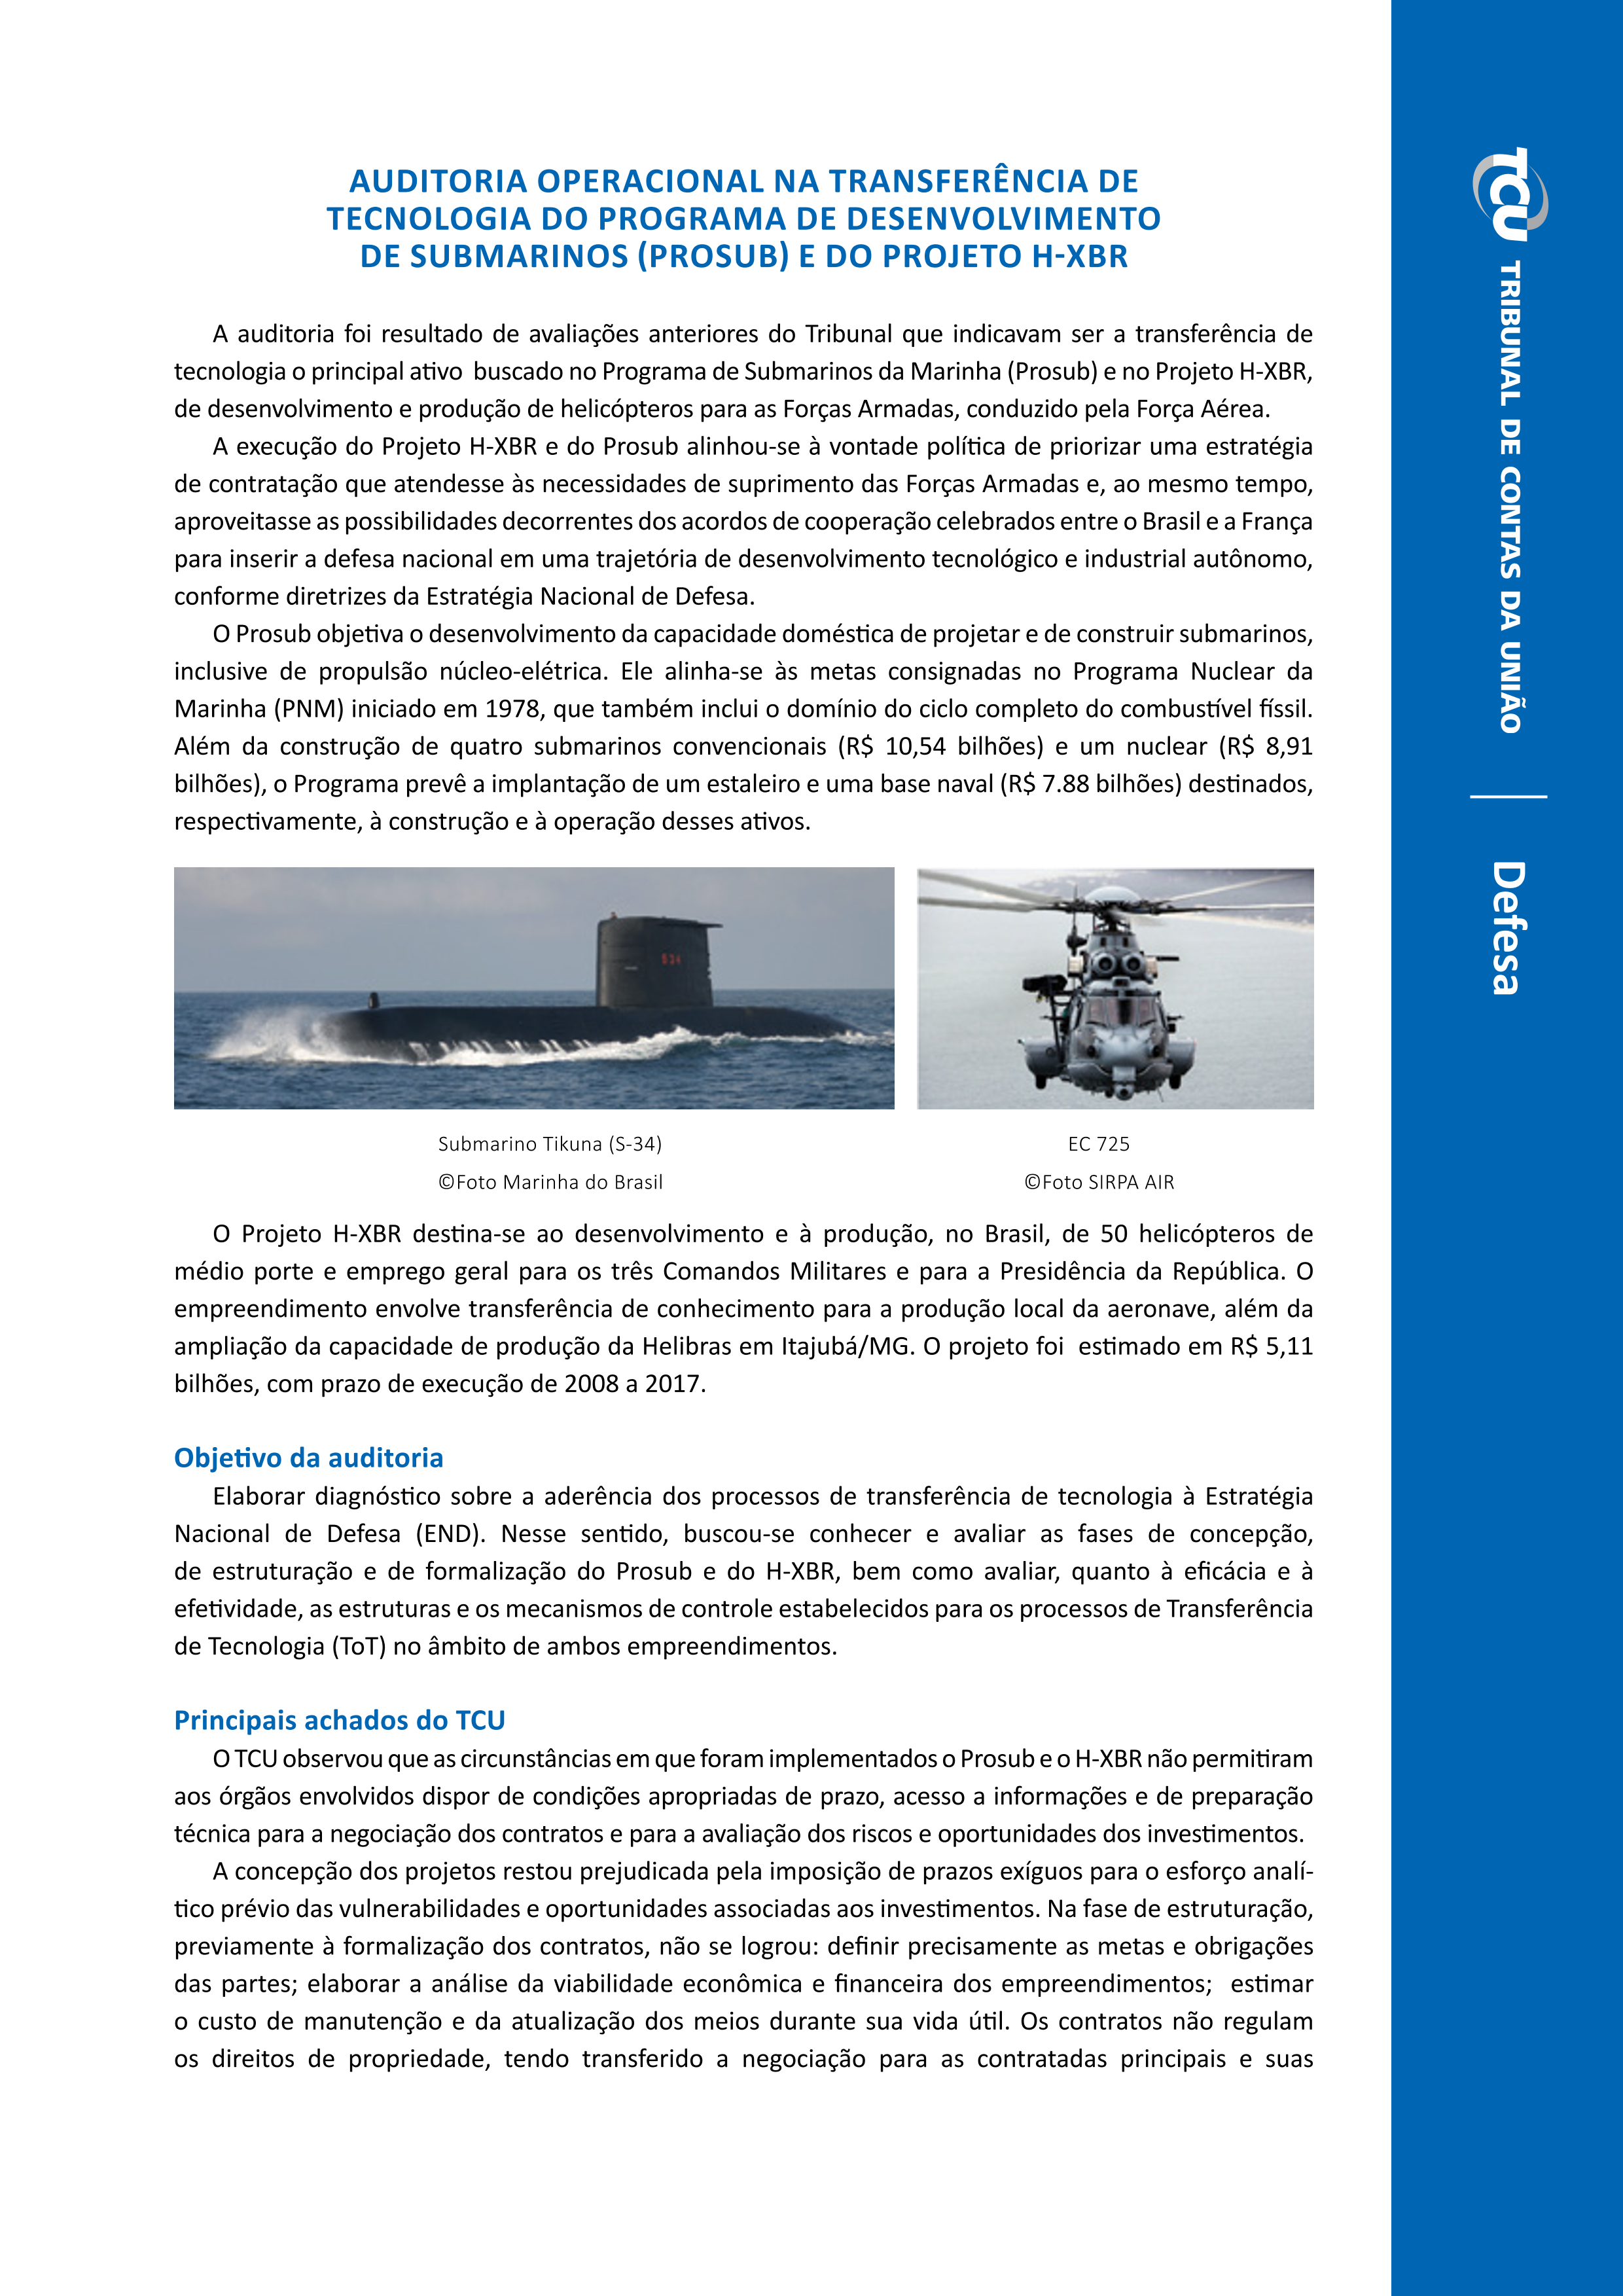 auditoria operacional na transfer_ncia de tecnologia do programa de desenvolvimento de submarino _prosub_ e do projeto h-xbr.png